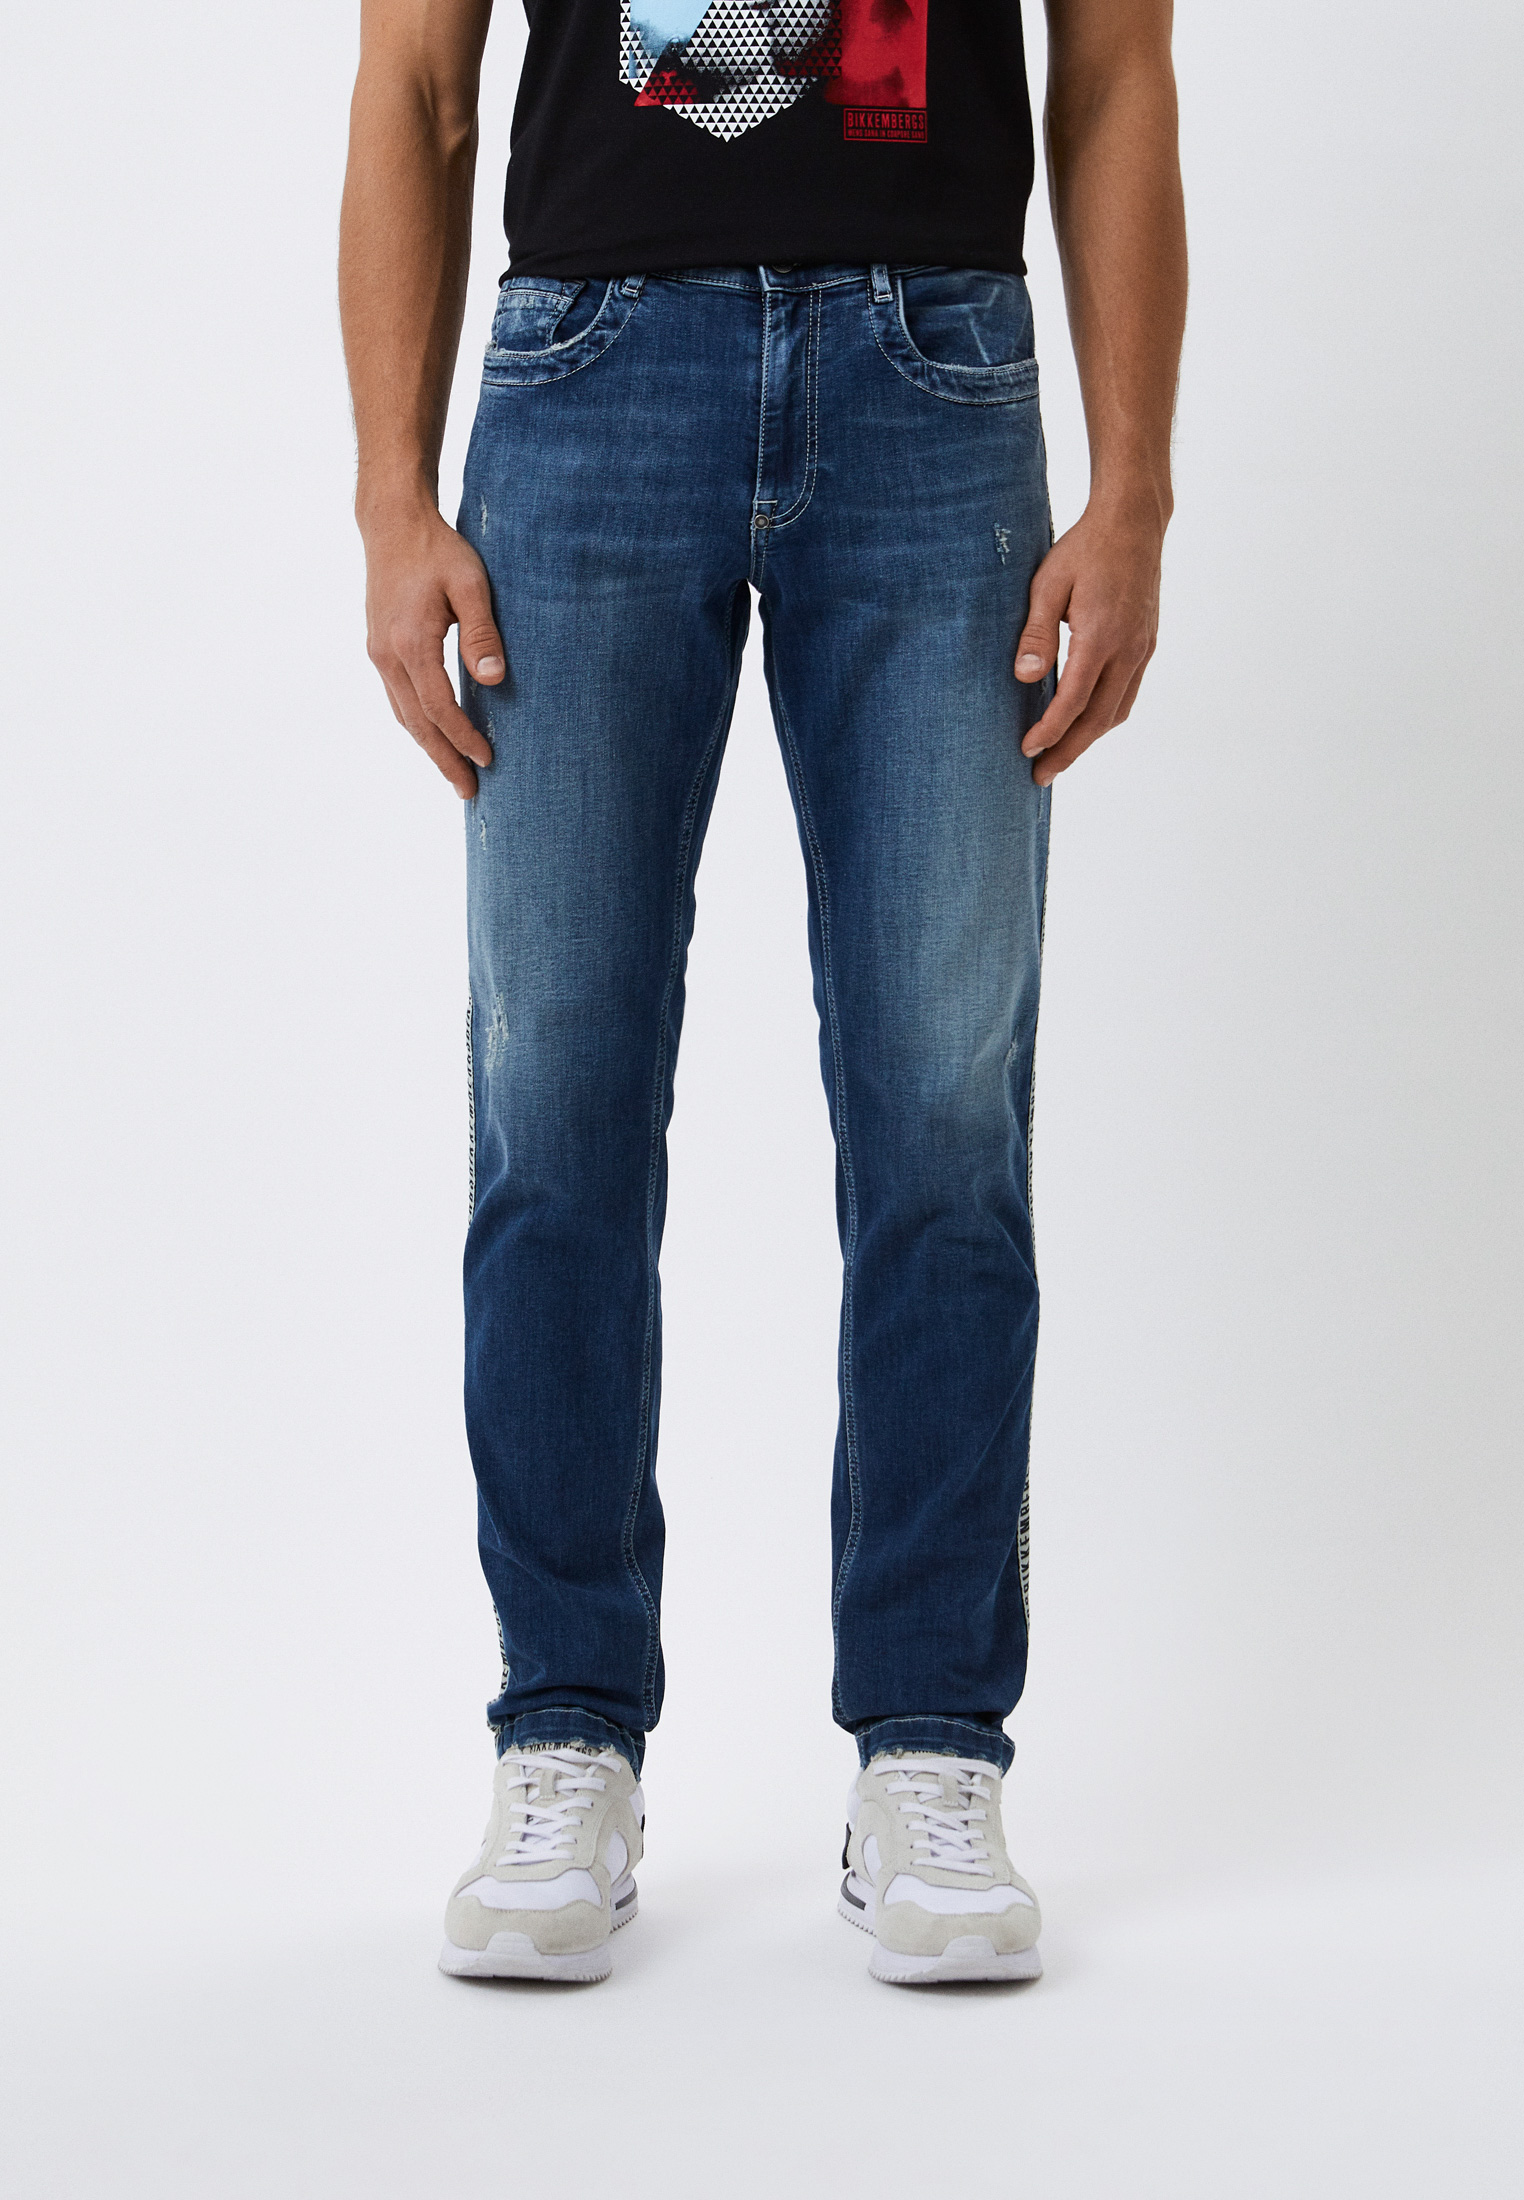 Мужские зауженные джинсы Bikkembergs (Биккембергс) C Q 101 1A S 3511: изображение 1